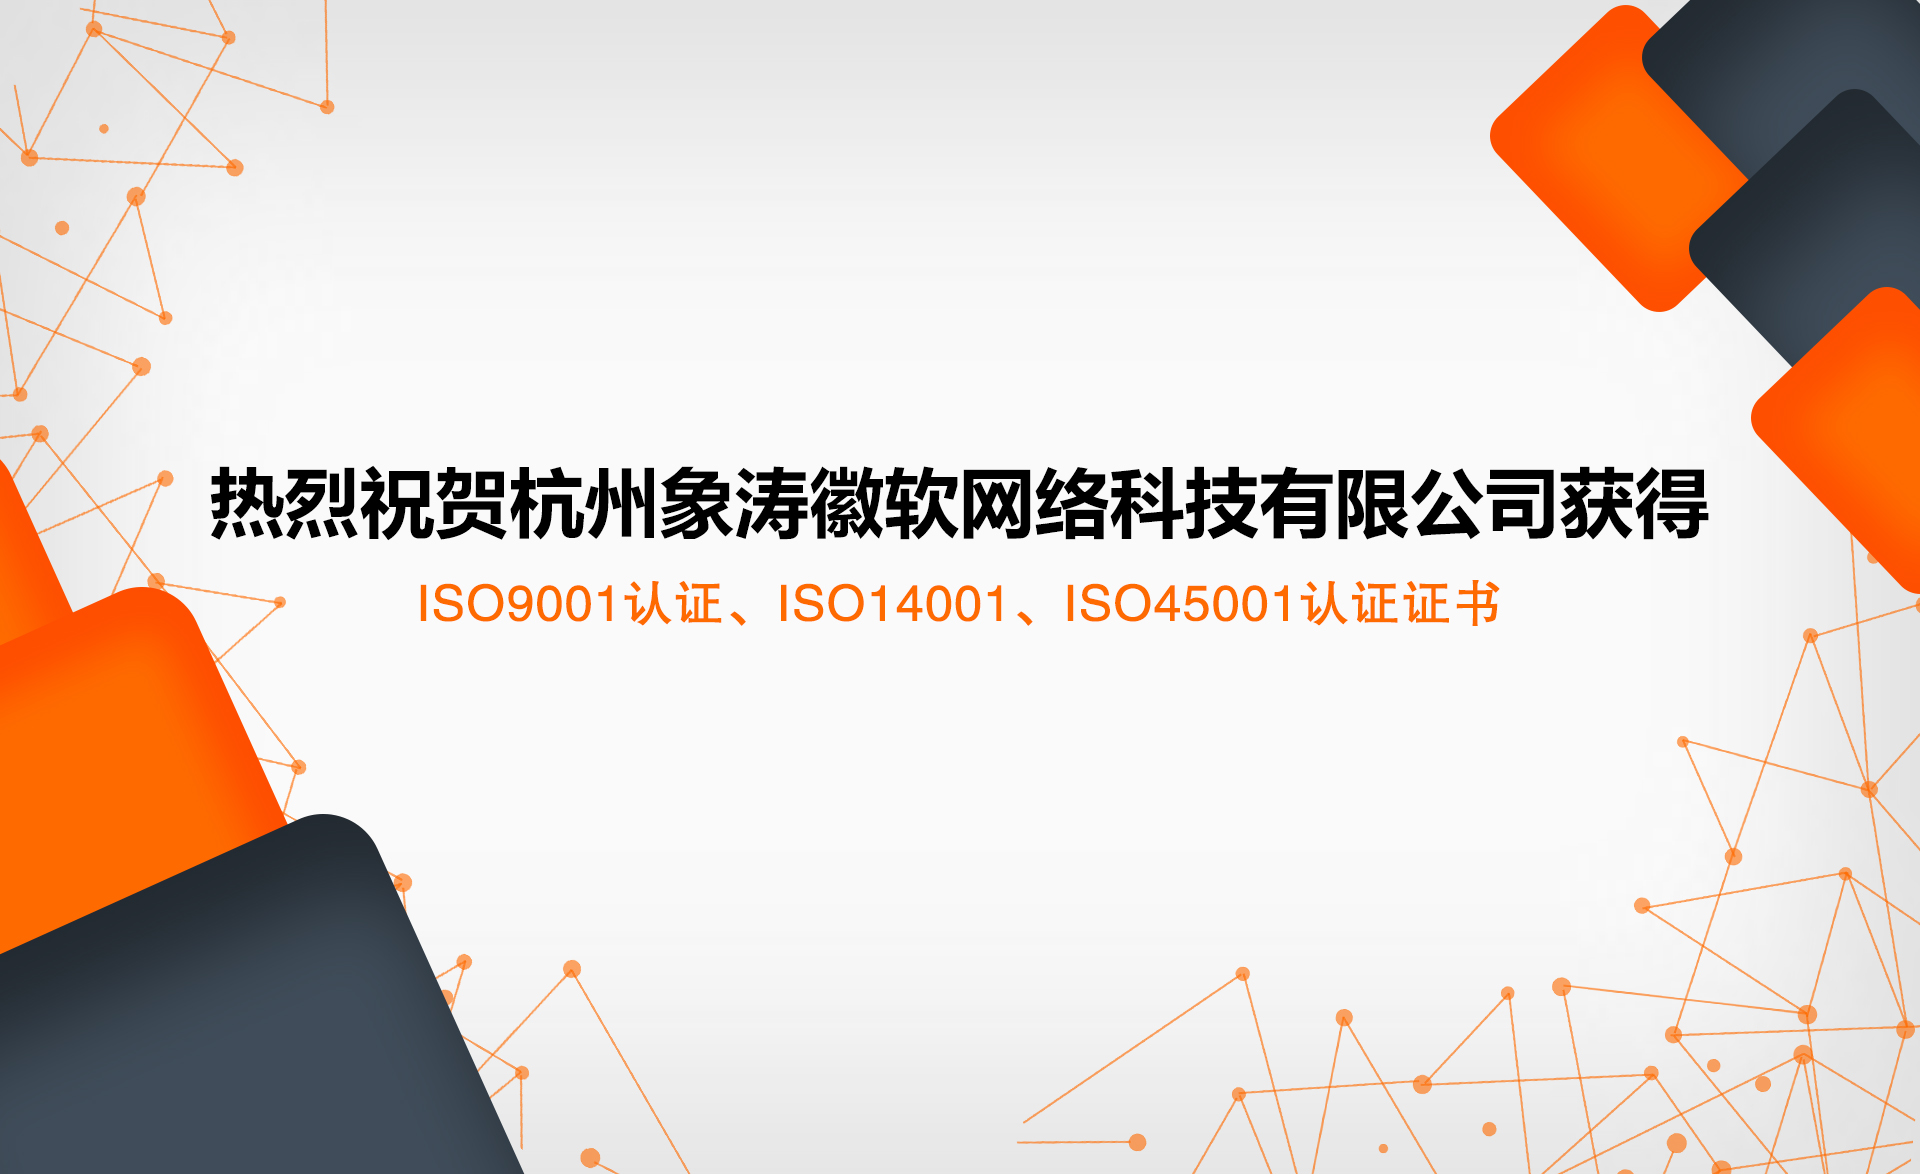 祝贺杭州象涛徽软网络科技有限公司获得ISO证书